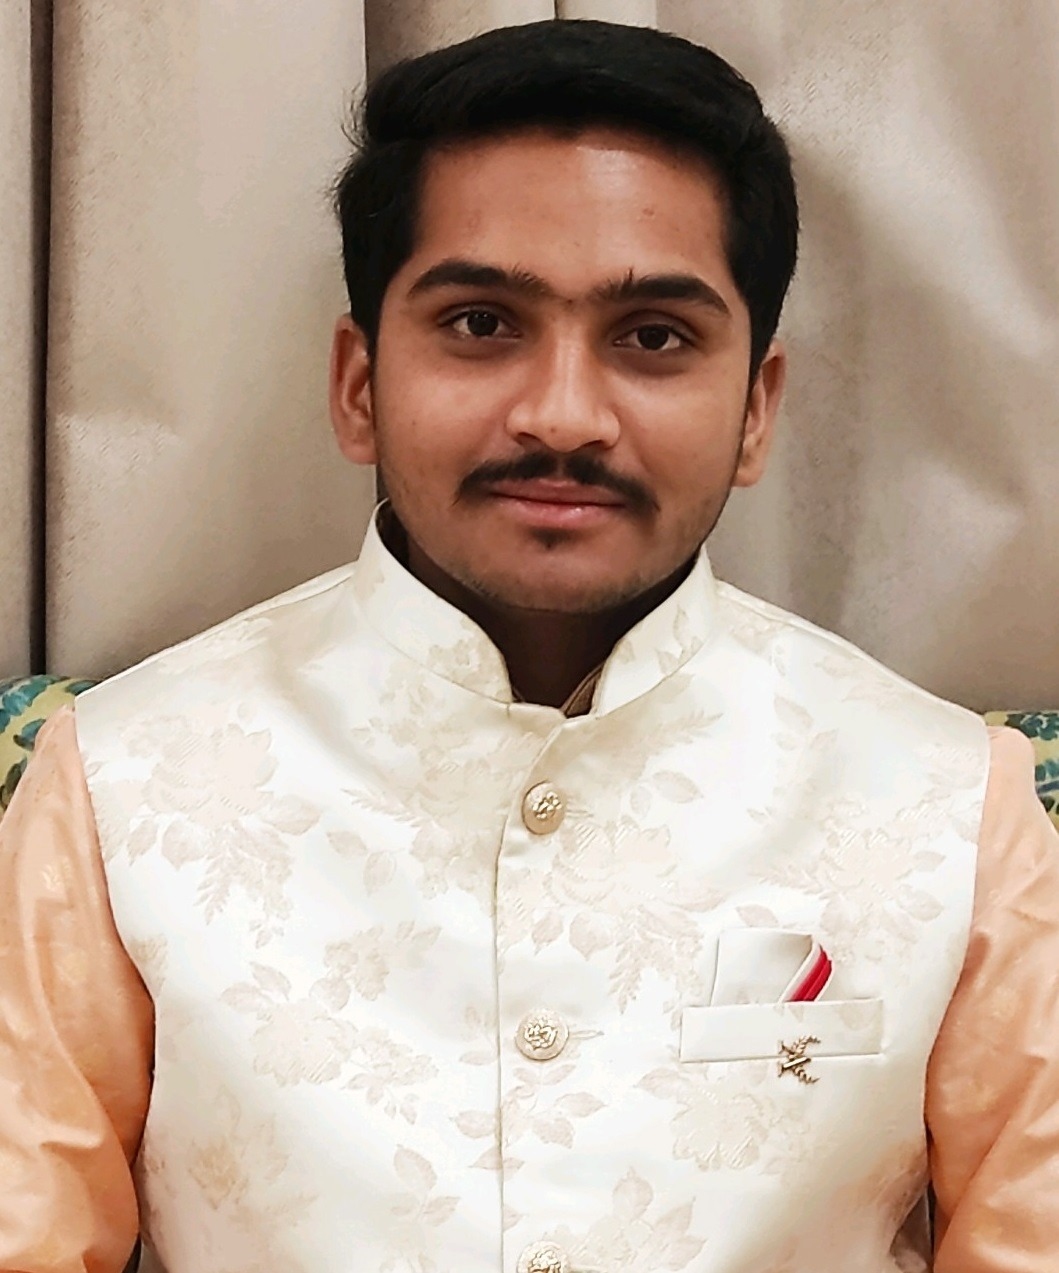  Akshay S. Palkurtiwar